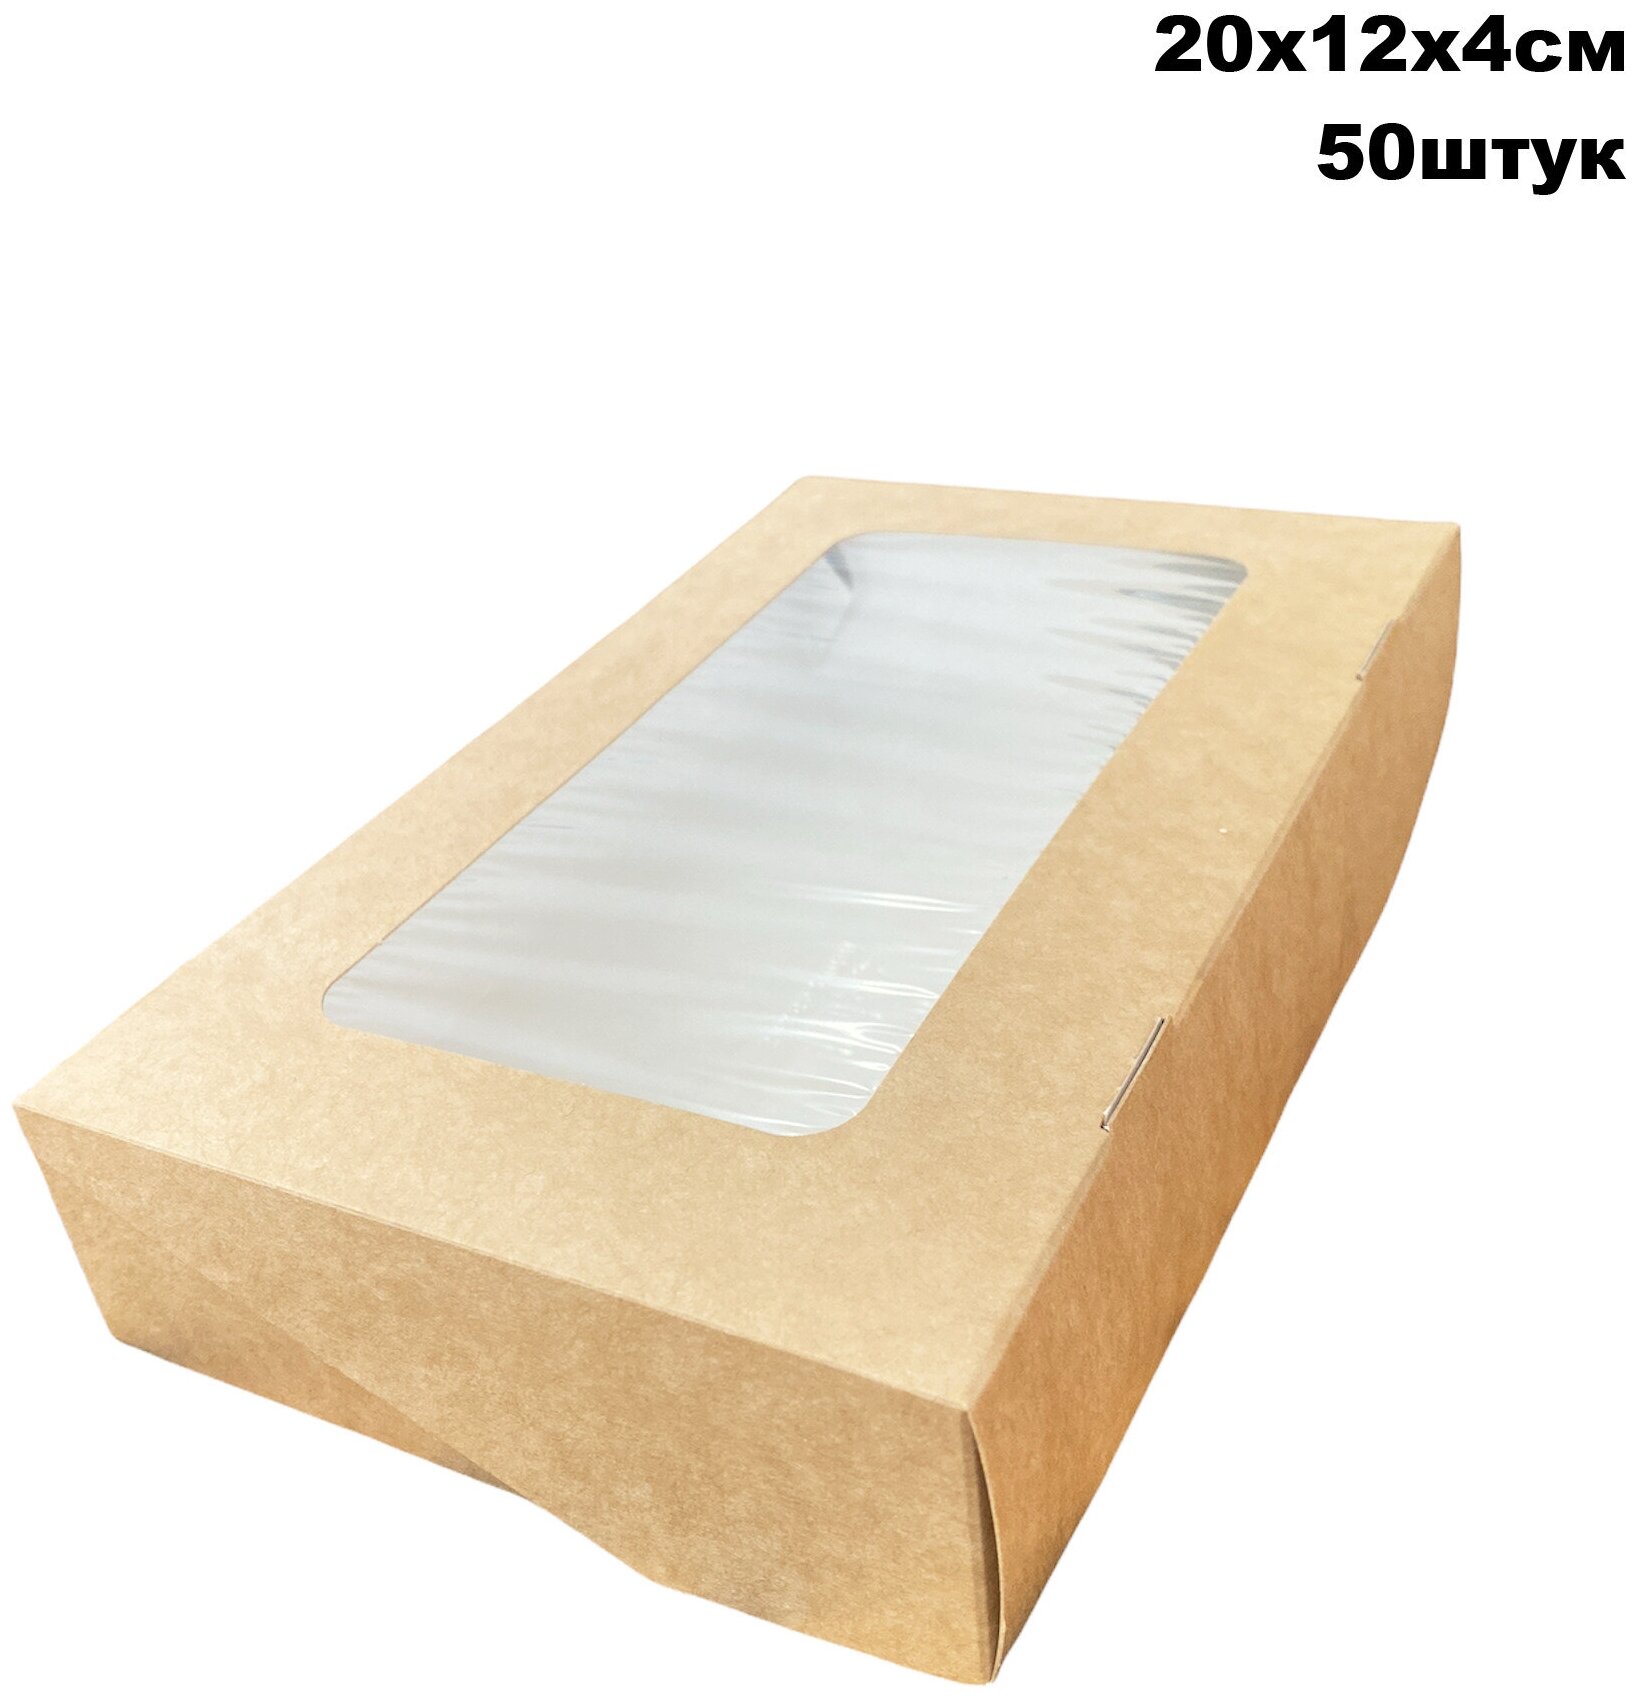 Крафт коробка с окном -20х12х4 см 50штук